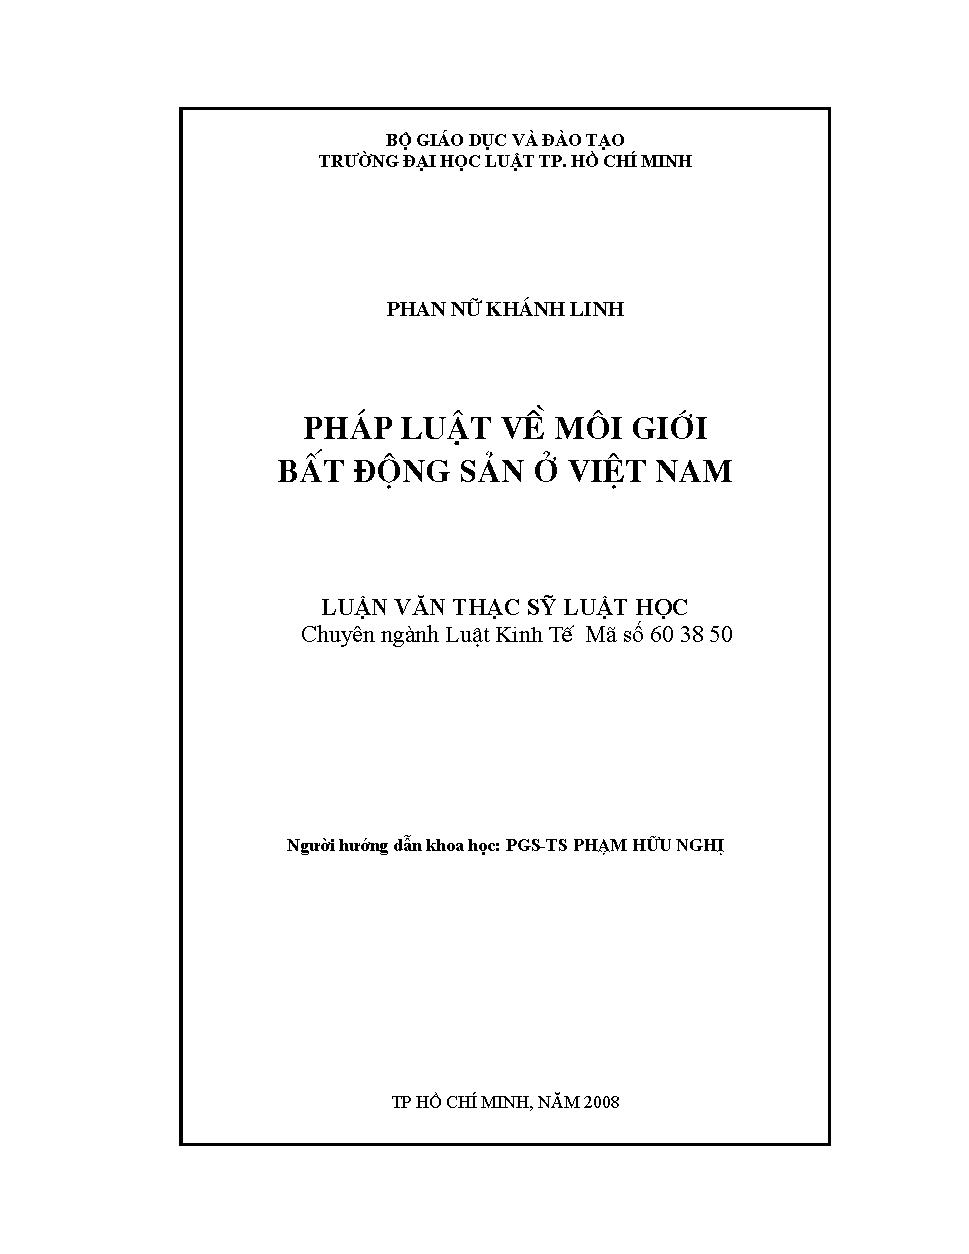 Pháp luật về môi giới bất động sản ở Việt Nam